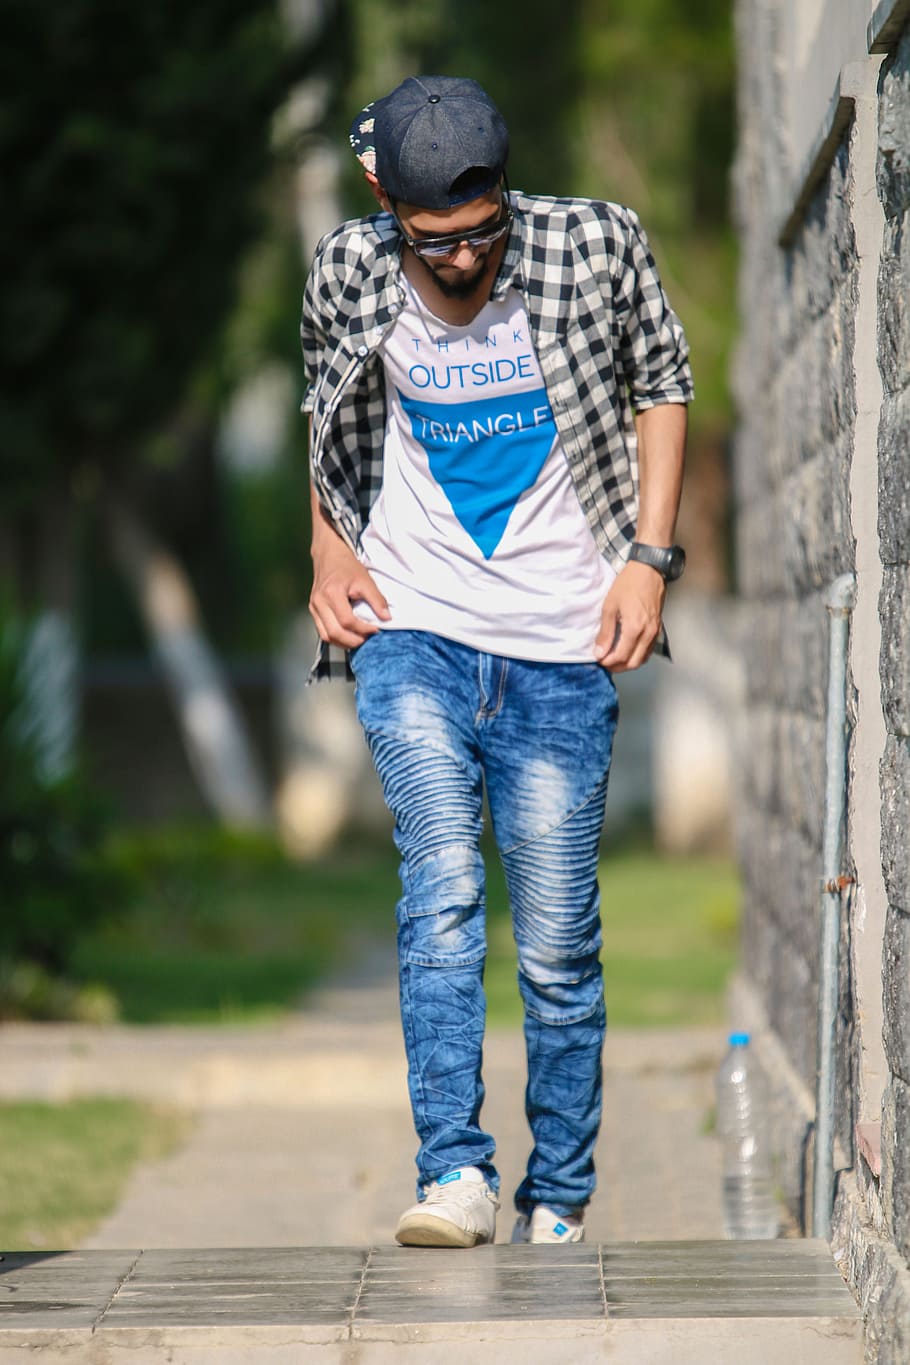 Mahesh Babu Looks Super Stylish in latest photoshoot Pics - Telugu News -  IndiaGlitz.com